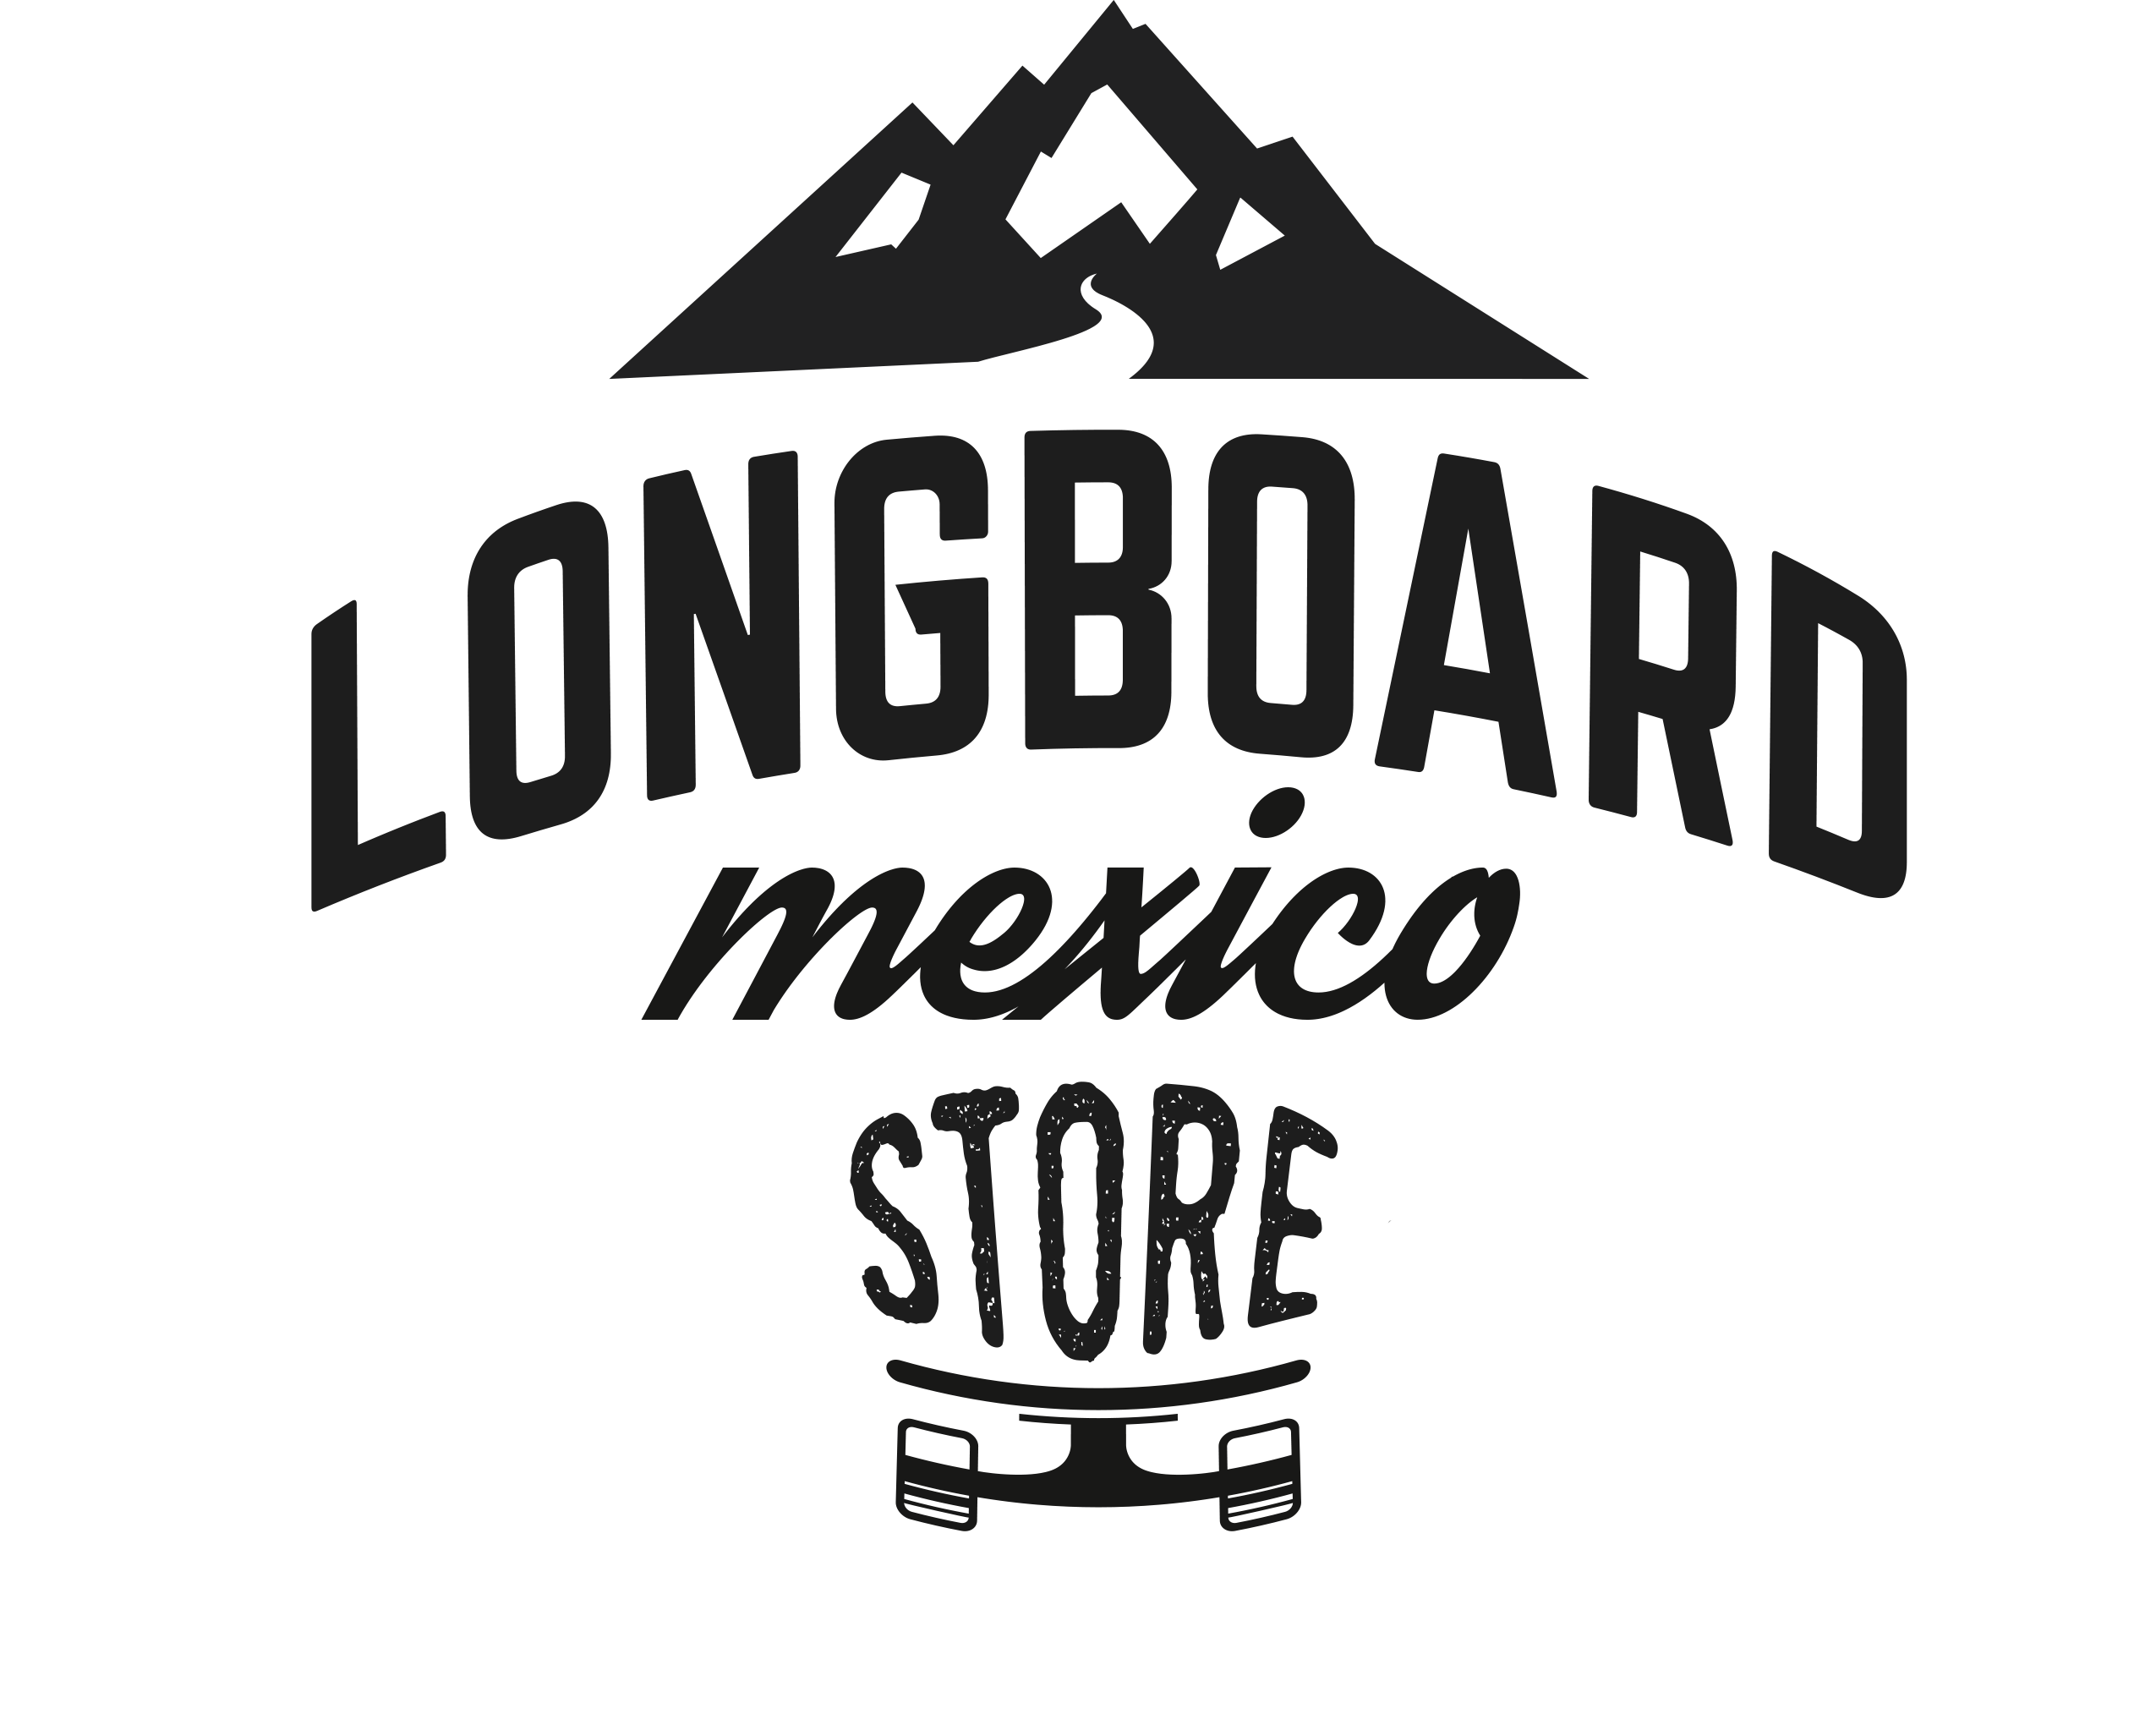 Longboard Mexico Store